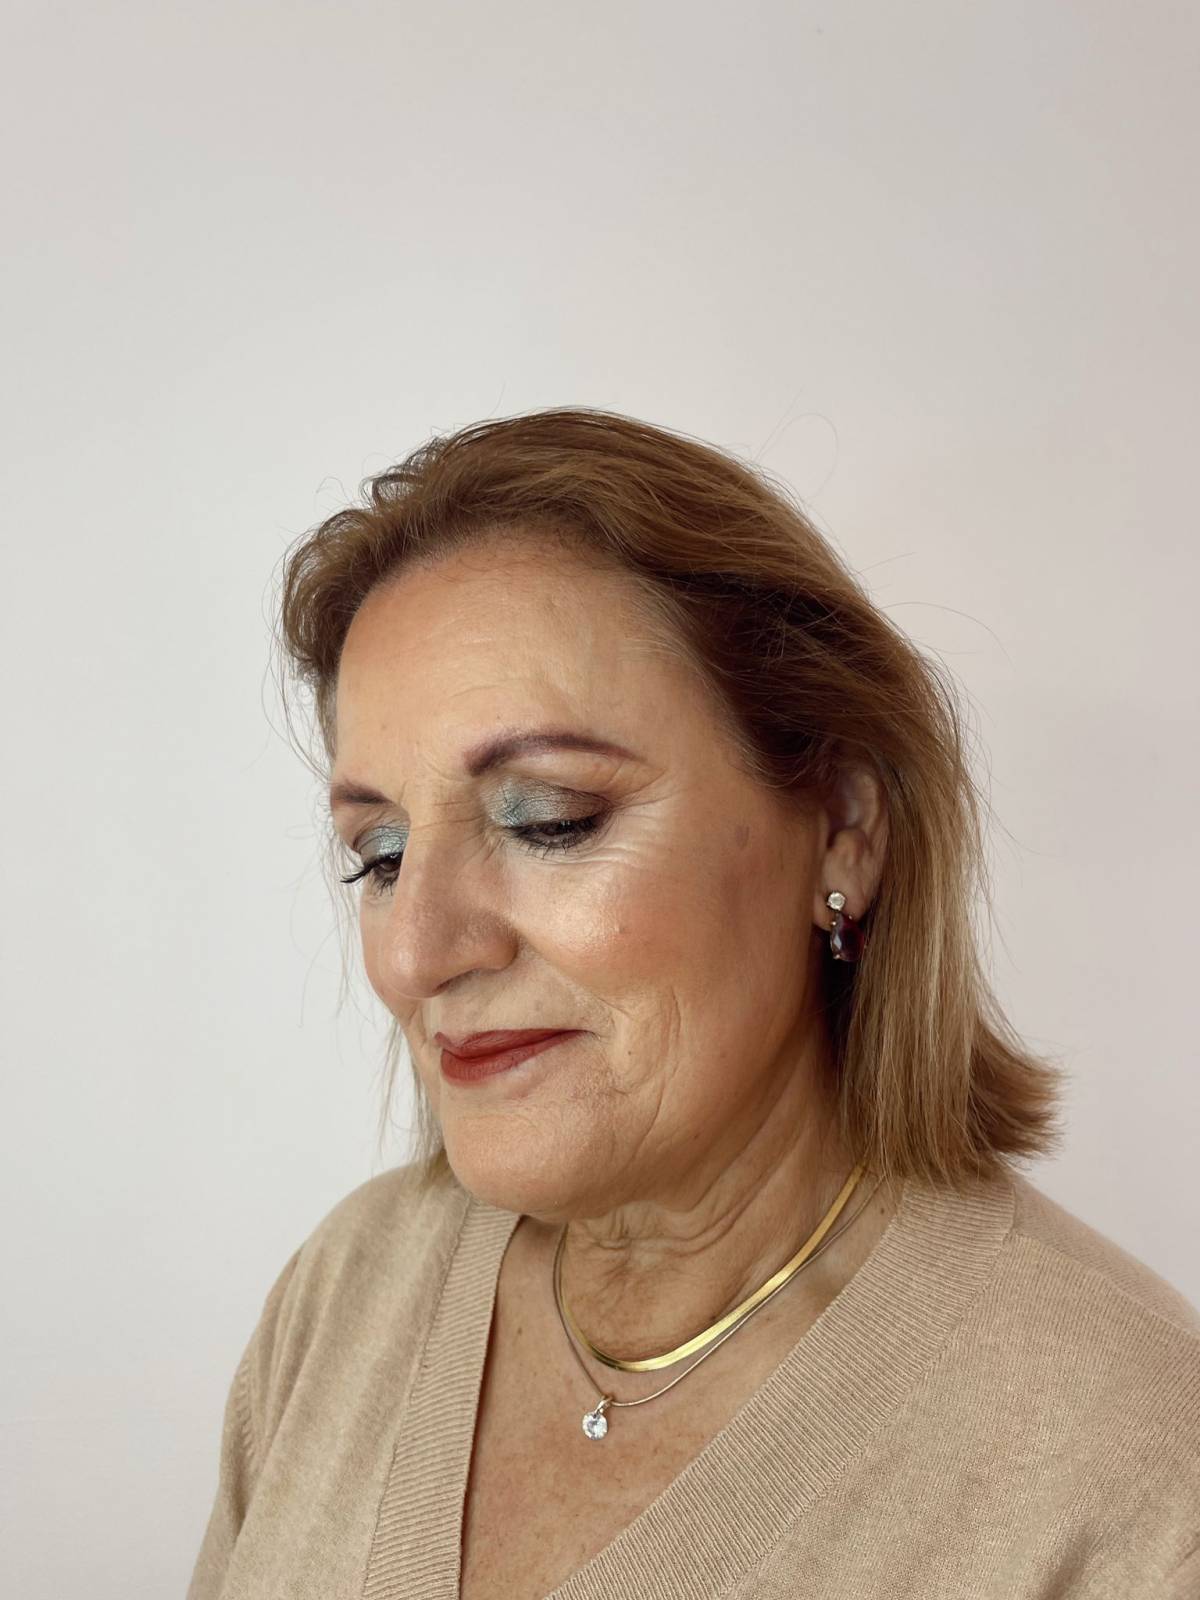 Beatriz Araújo Makeup Artist - Santo Tirso - Penteados para Casamentos